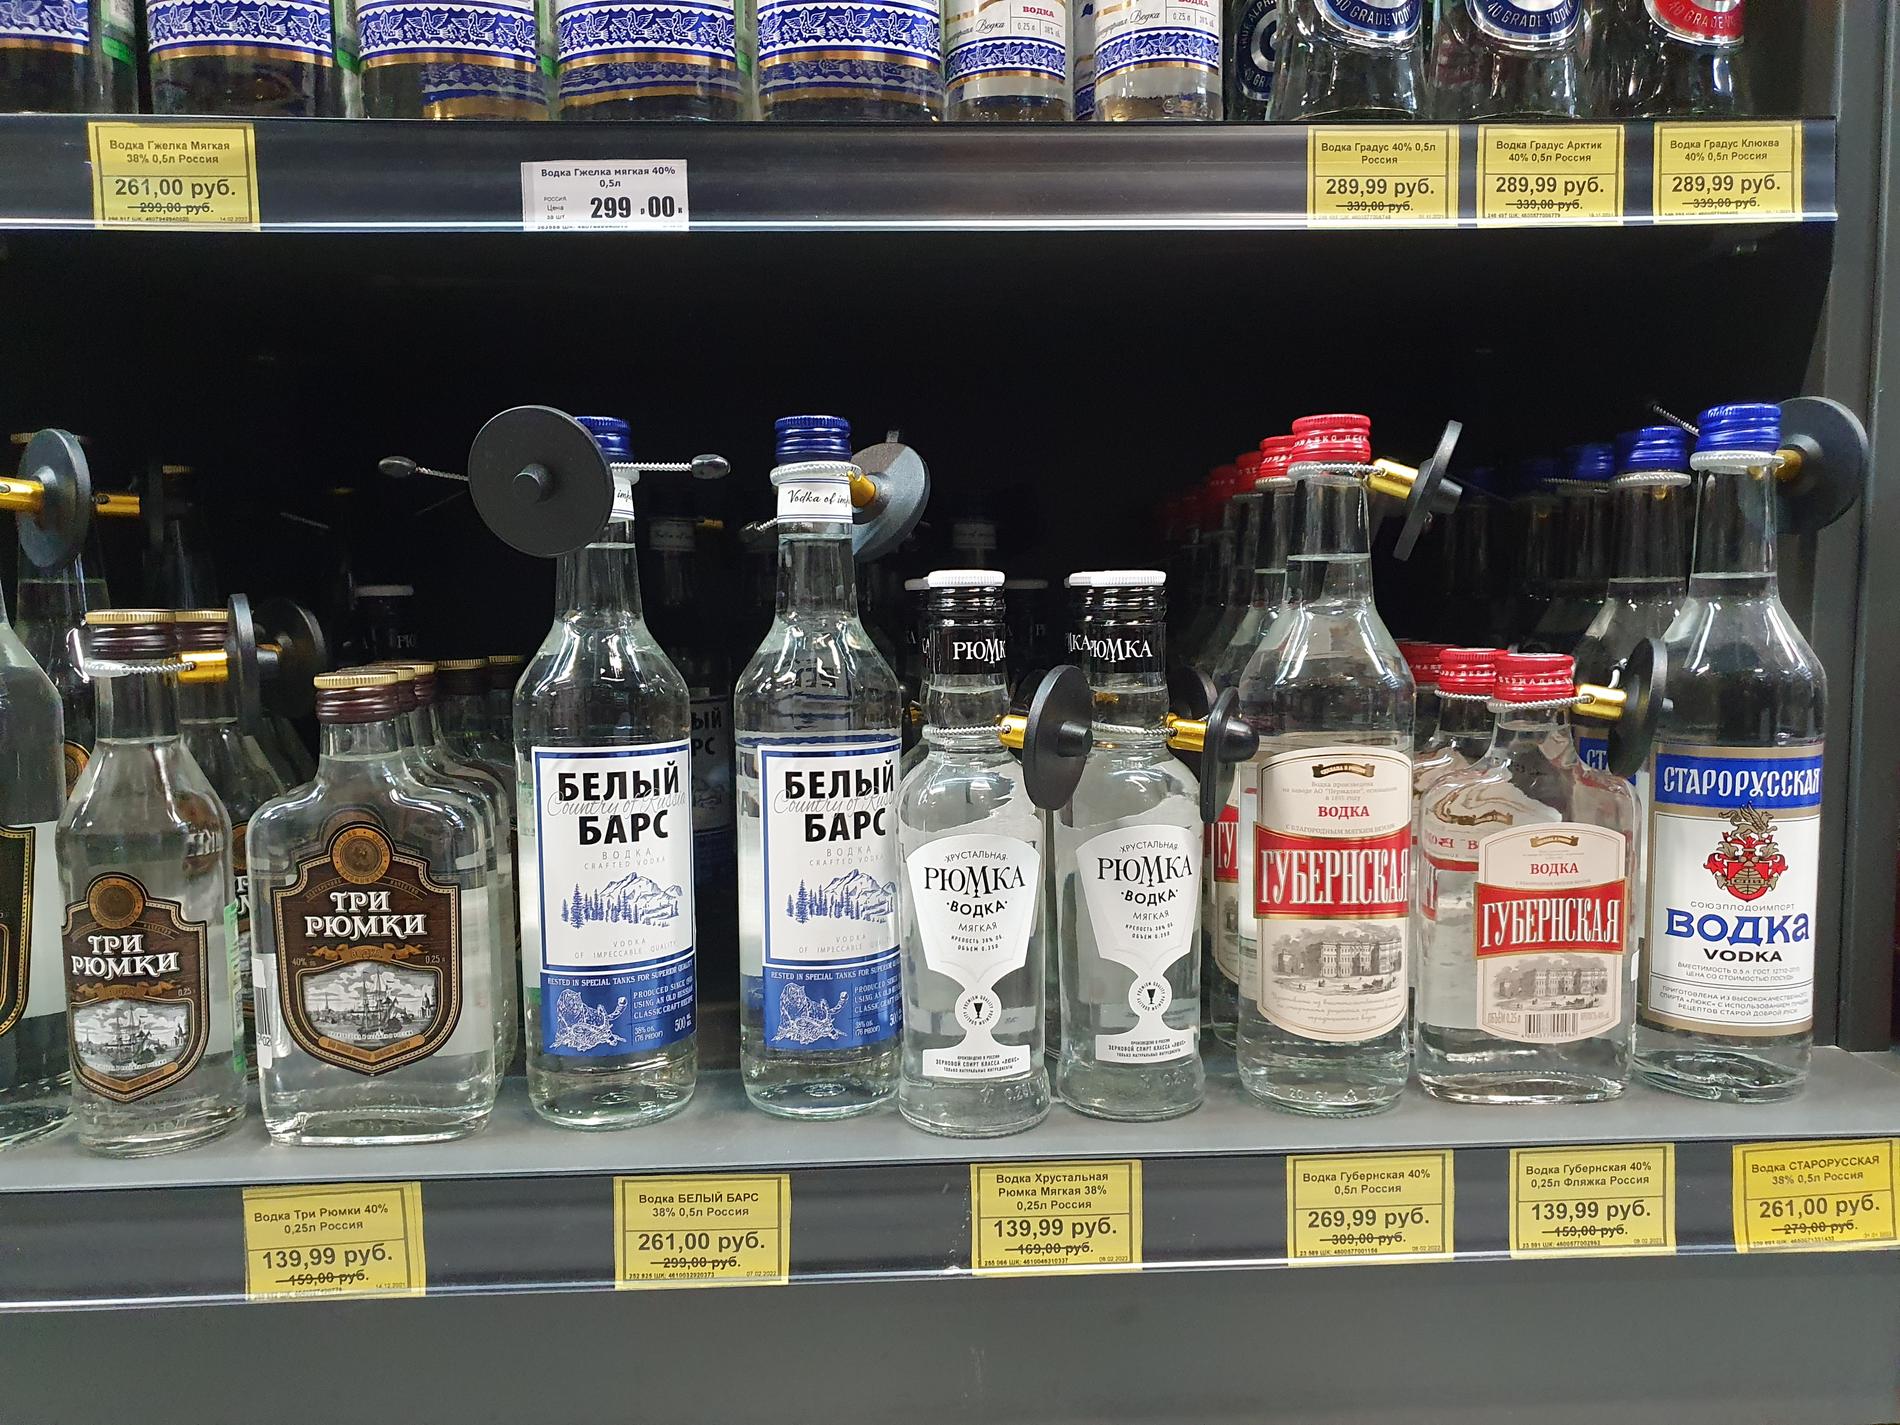 Starorusskaja Vodka och Belyj Bars Vodka kostar 261 rubel för en halvliter, omkring 32 kronor, i Kaliningrad.